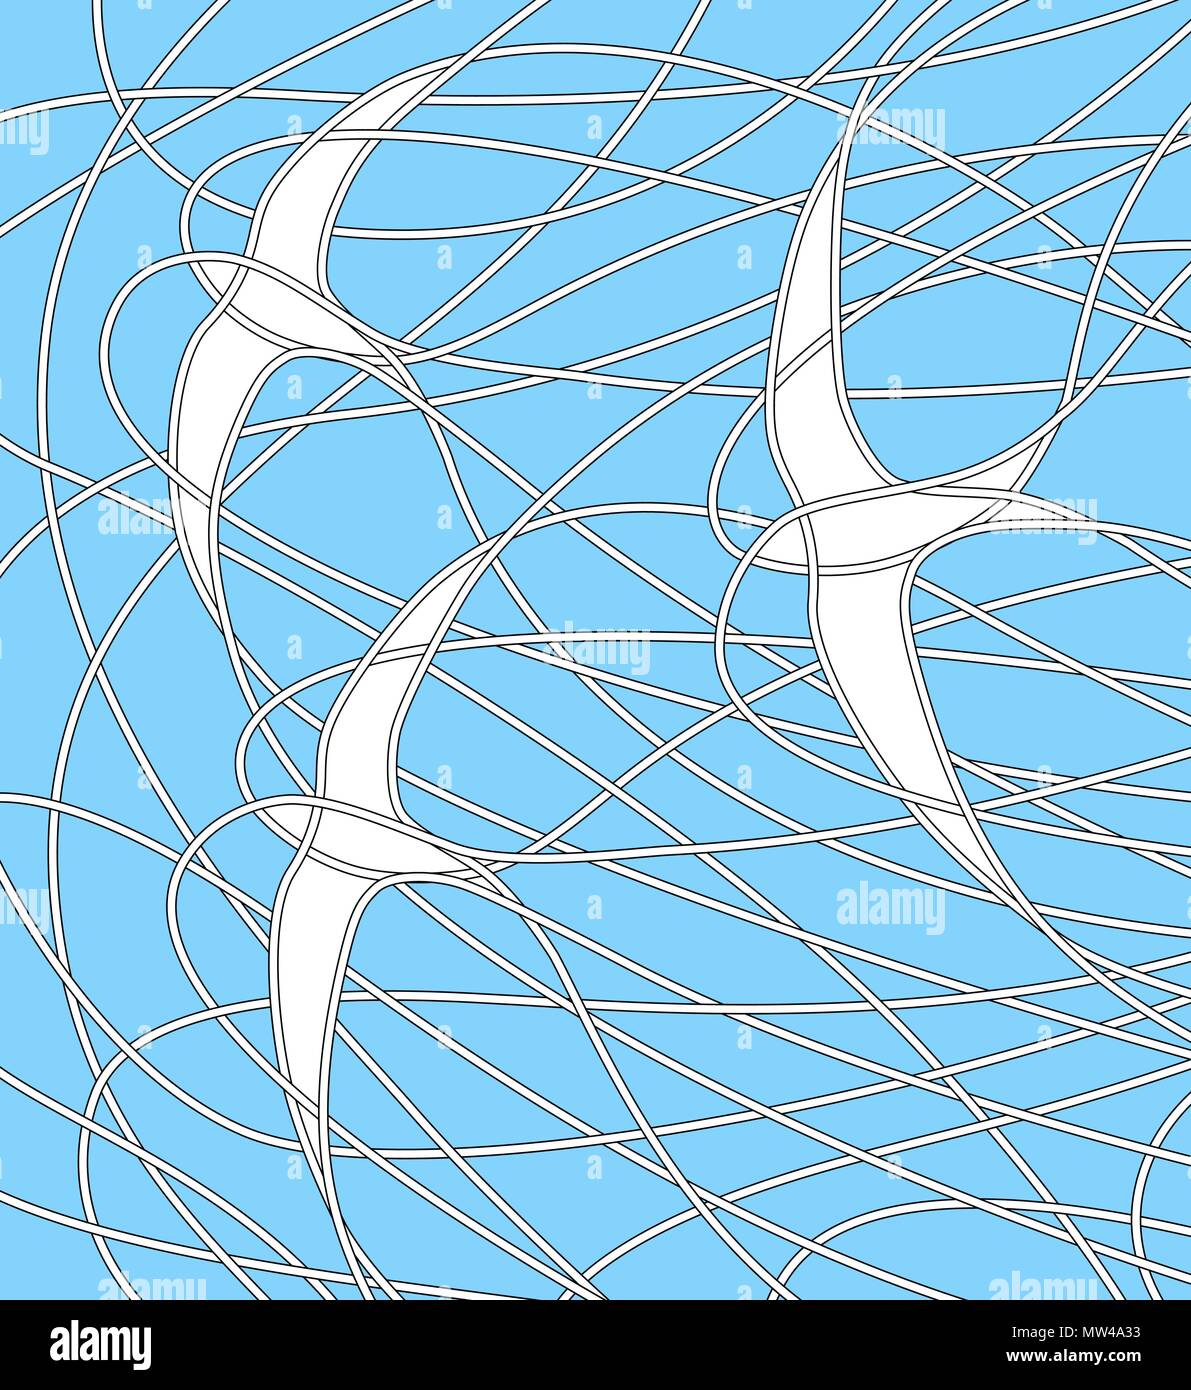 Editable Vector Illustration von drei Mauersegler fliegen in einem blauen Himmel Stock Vektor